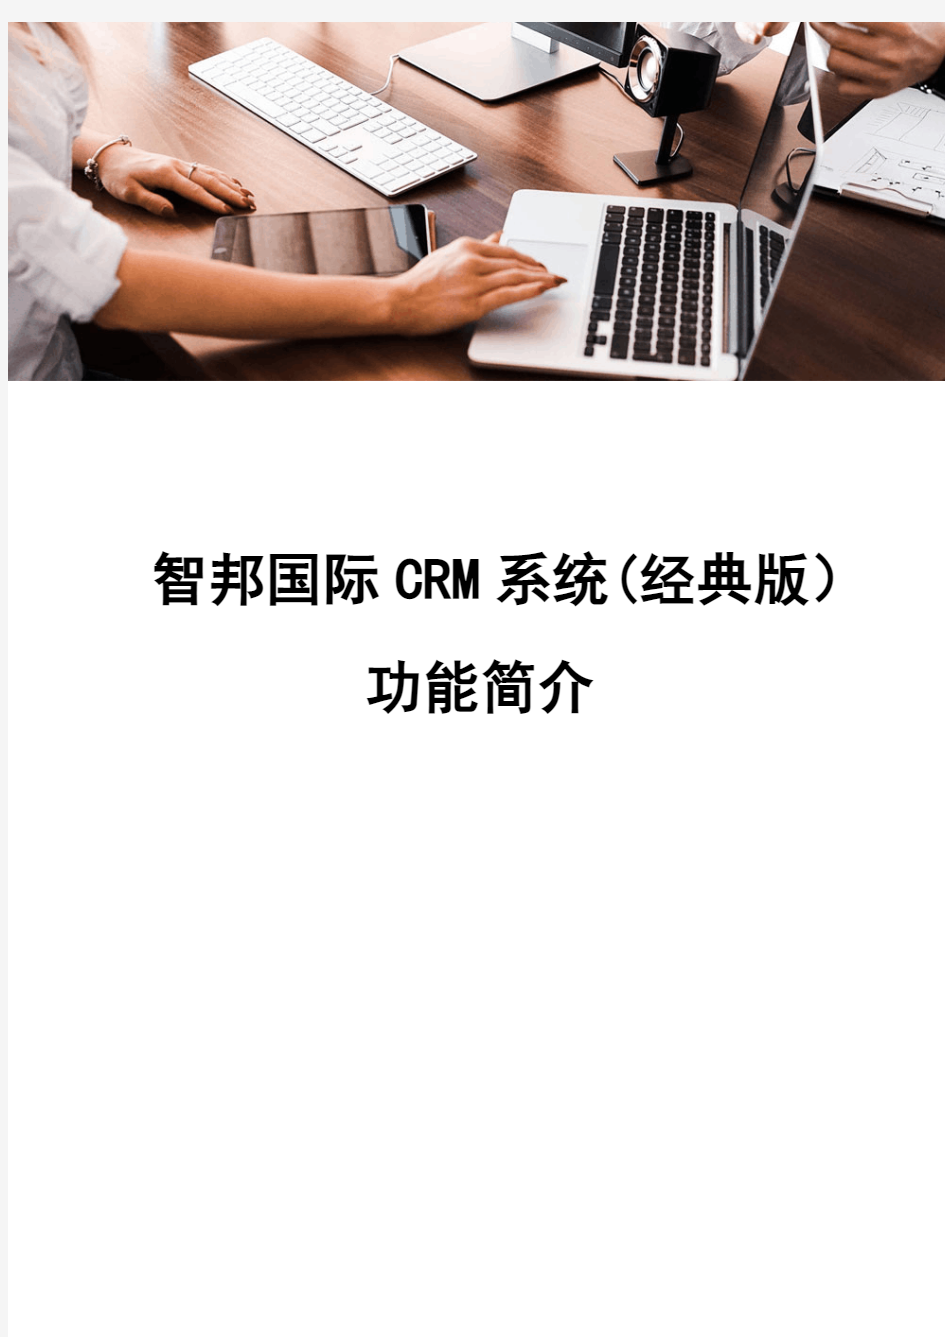 智邦国际CRM系统(经典版)功能简介